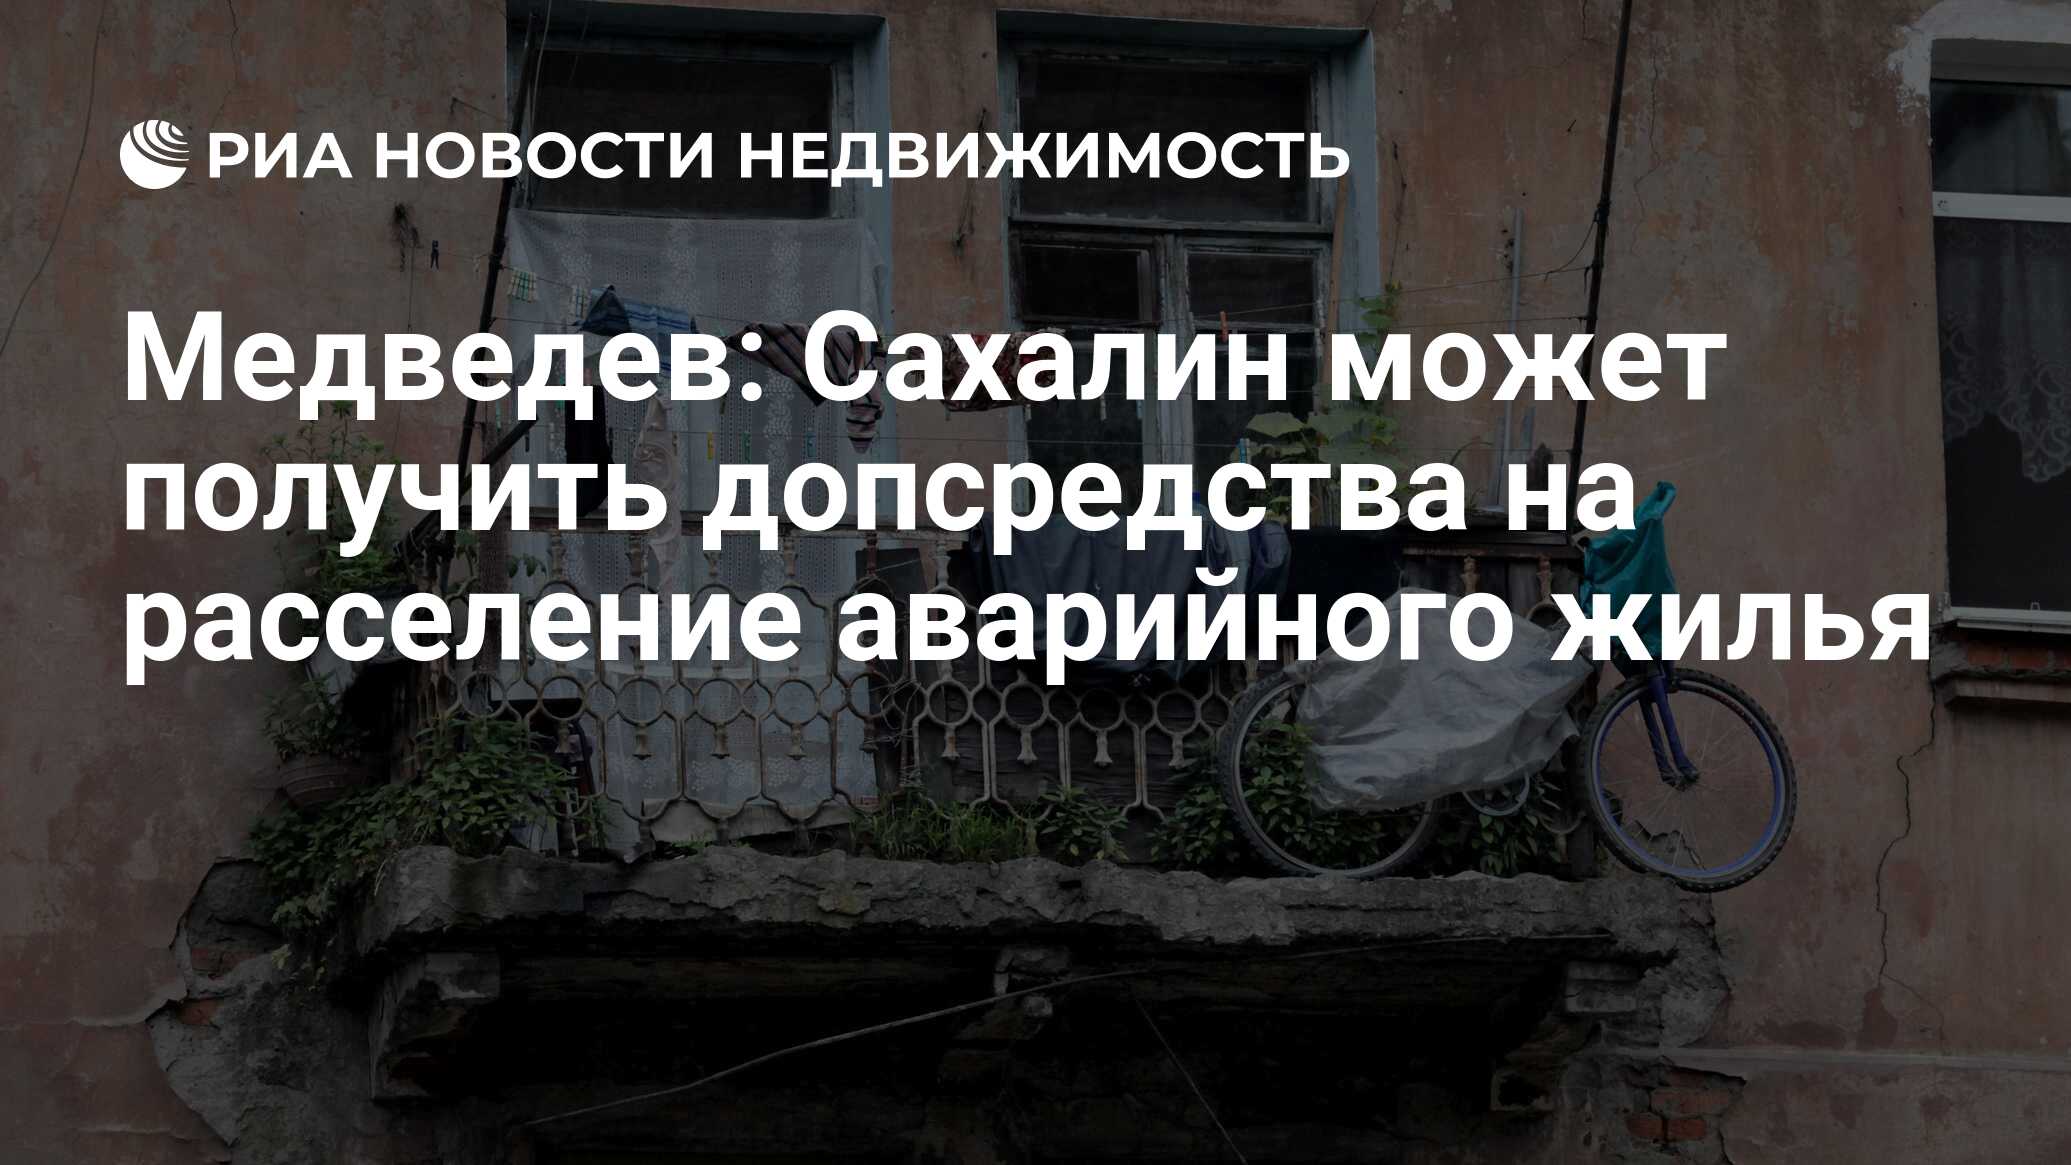 Сайт жкх переселение из аварийного жилья. Сахалин аварийное жилье. Медведев на Сахалине.